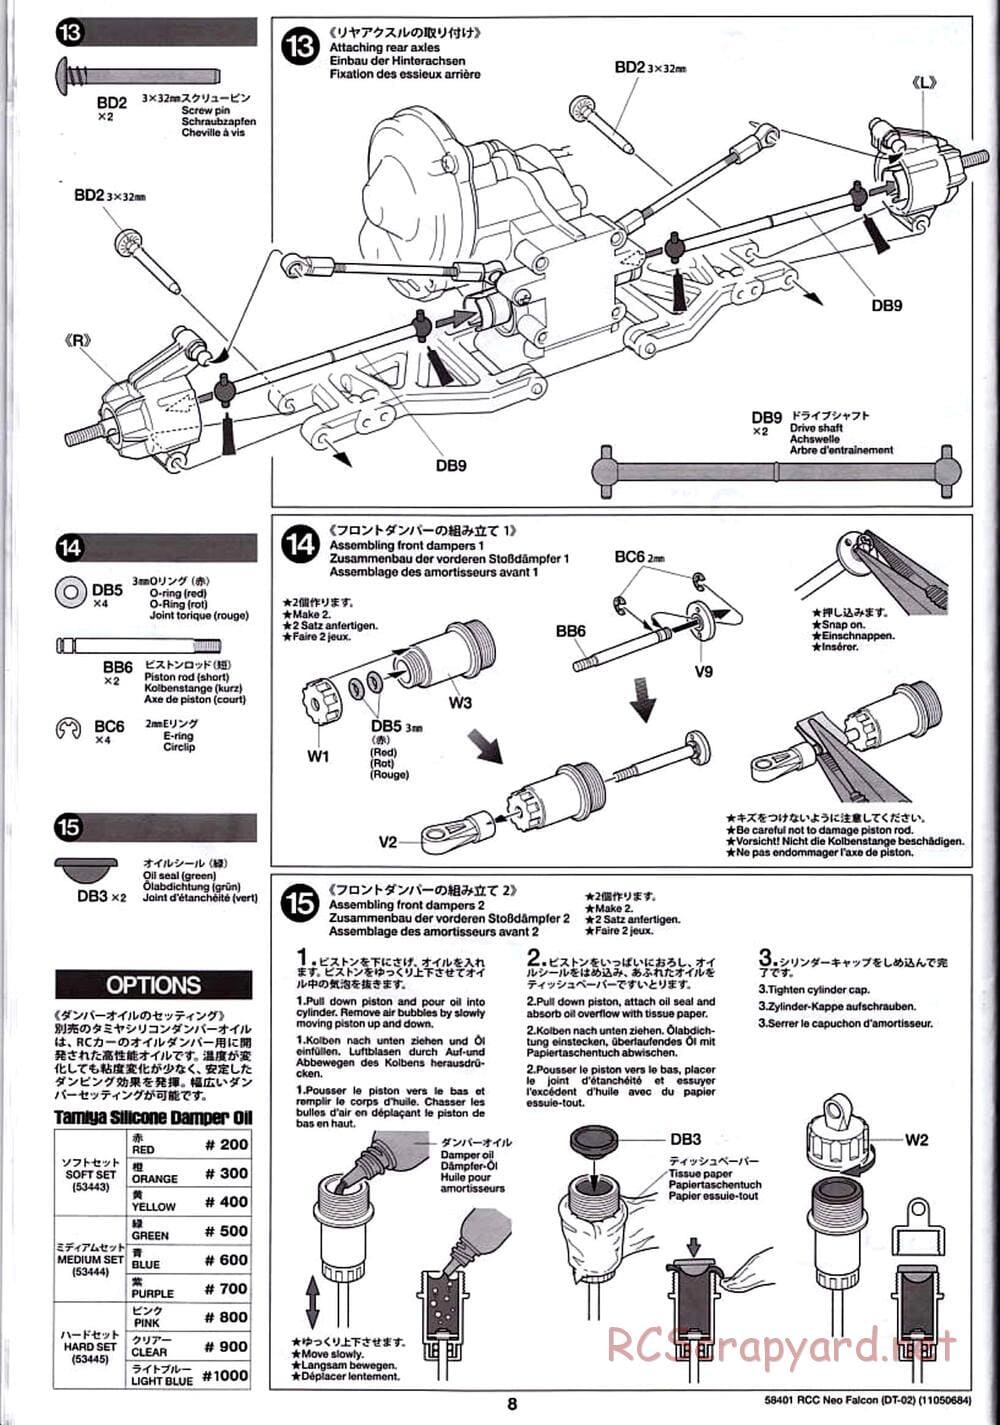 Tamiya - Neo Falcon Chassis - Manual - Page 8